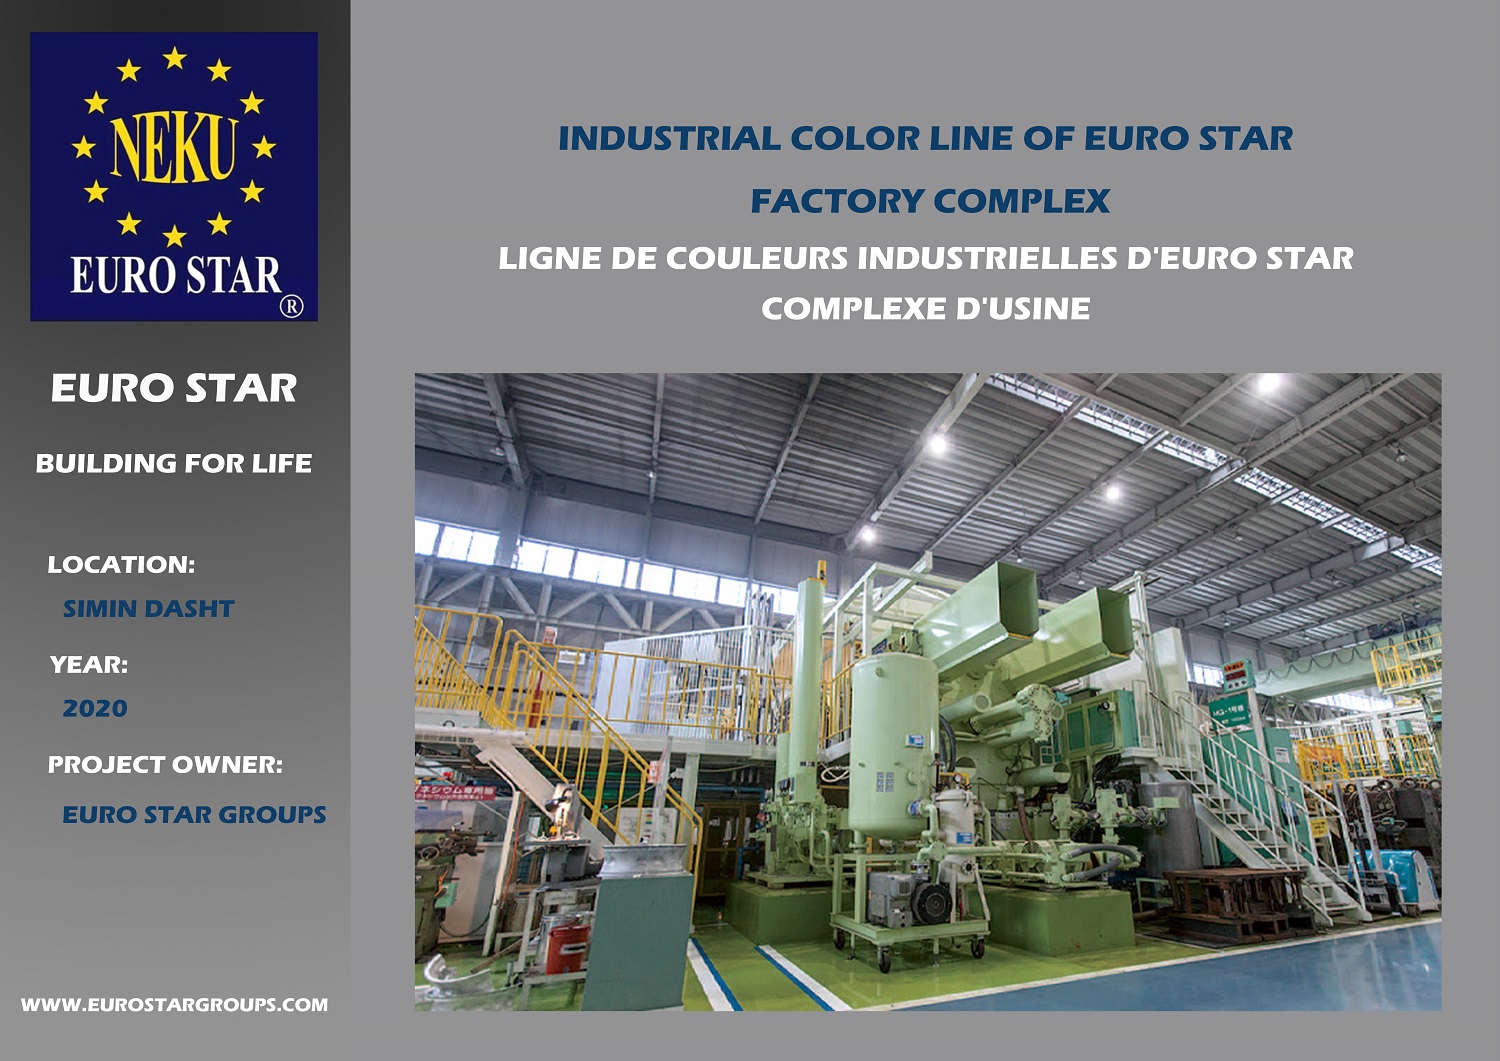 Fabrica de Color Industrial